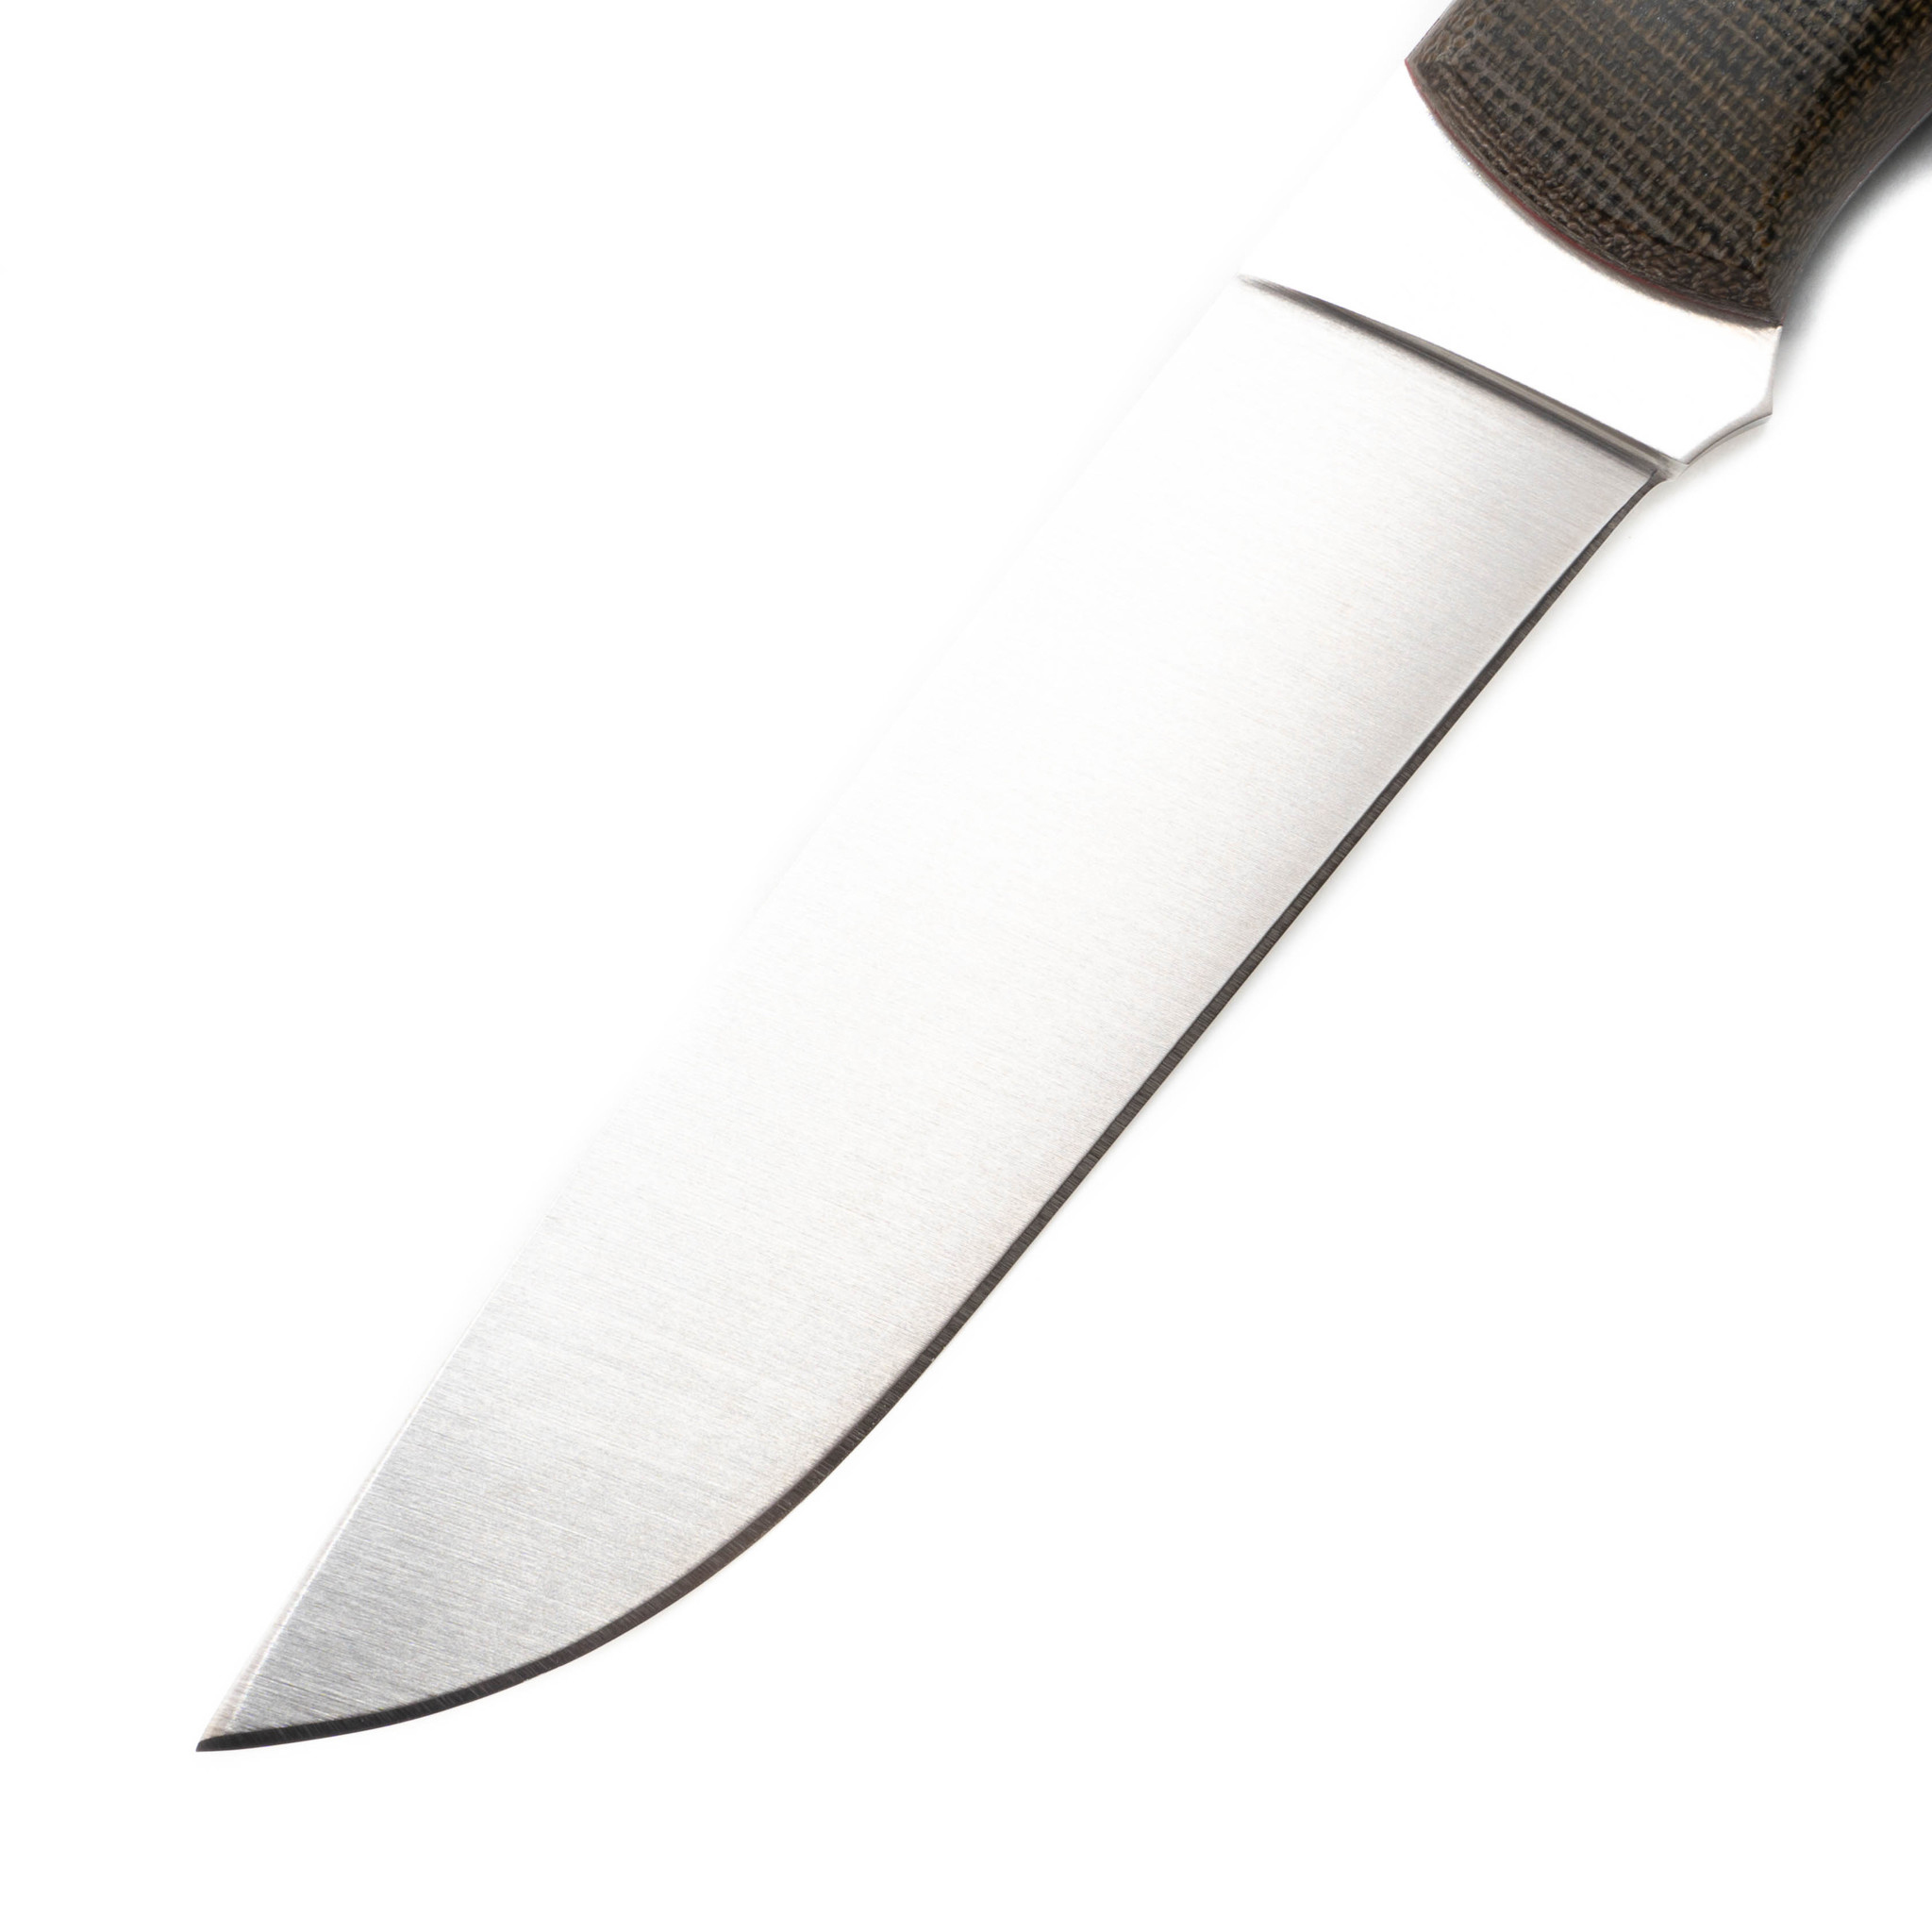 Нож Enzo Trapper 115 Flat Knife, микарта, сталь Elmax - фото 3